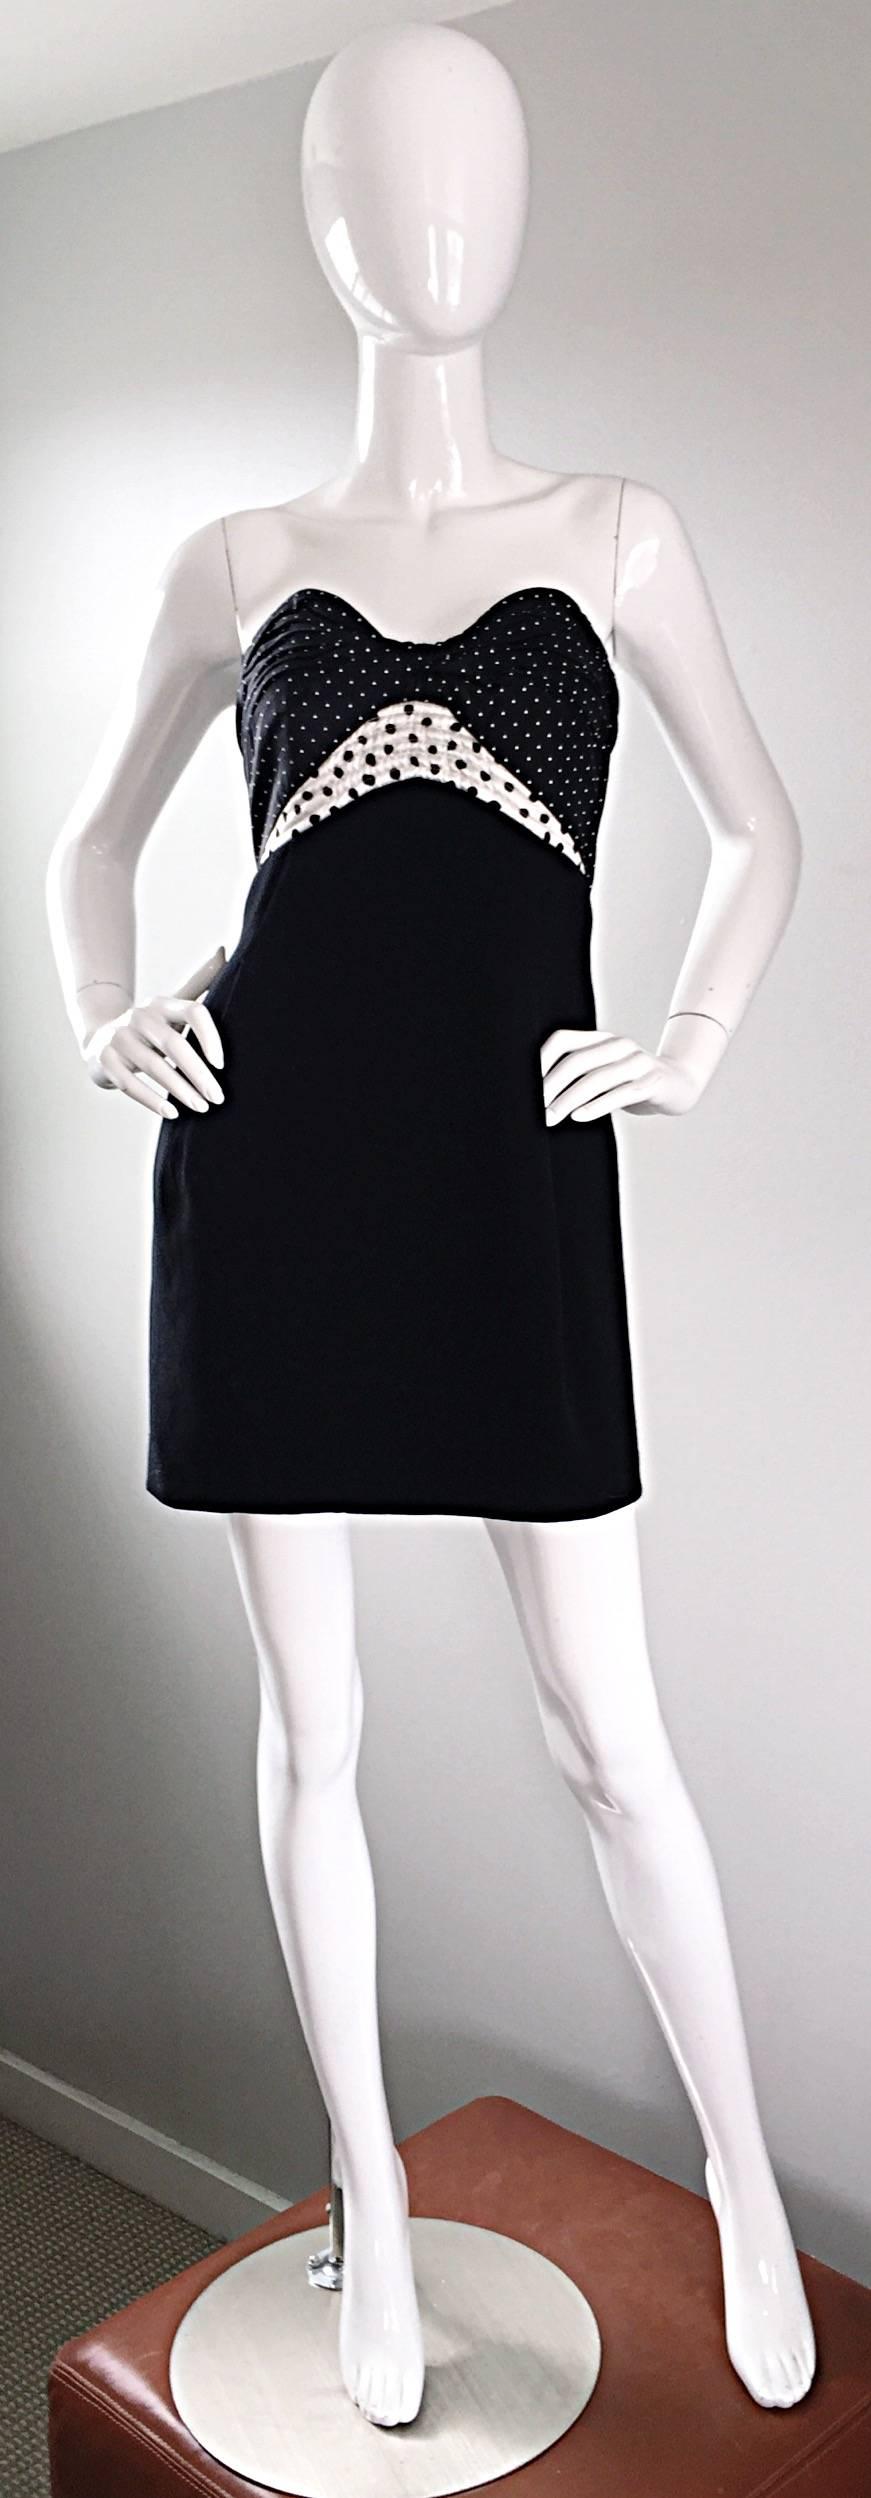 Exquisites trägerloses Kleid von GEOFFREY BEENE aus den frühen 90ern! Mit einem schwarz-weiß gepunkteten Mieder aus Seide und einem schmeichelhaften, leichten Rock aus schwarzer Wolle. Eine tadellose Konstruktion mit der großen Liebe zum Detail, für